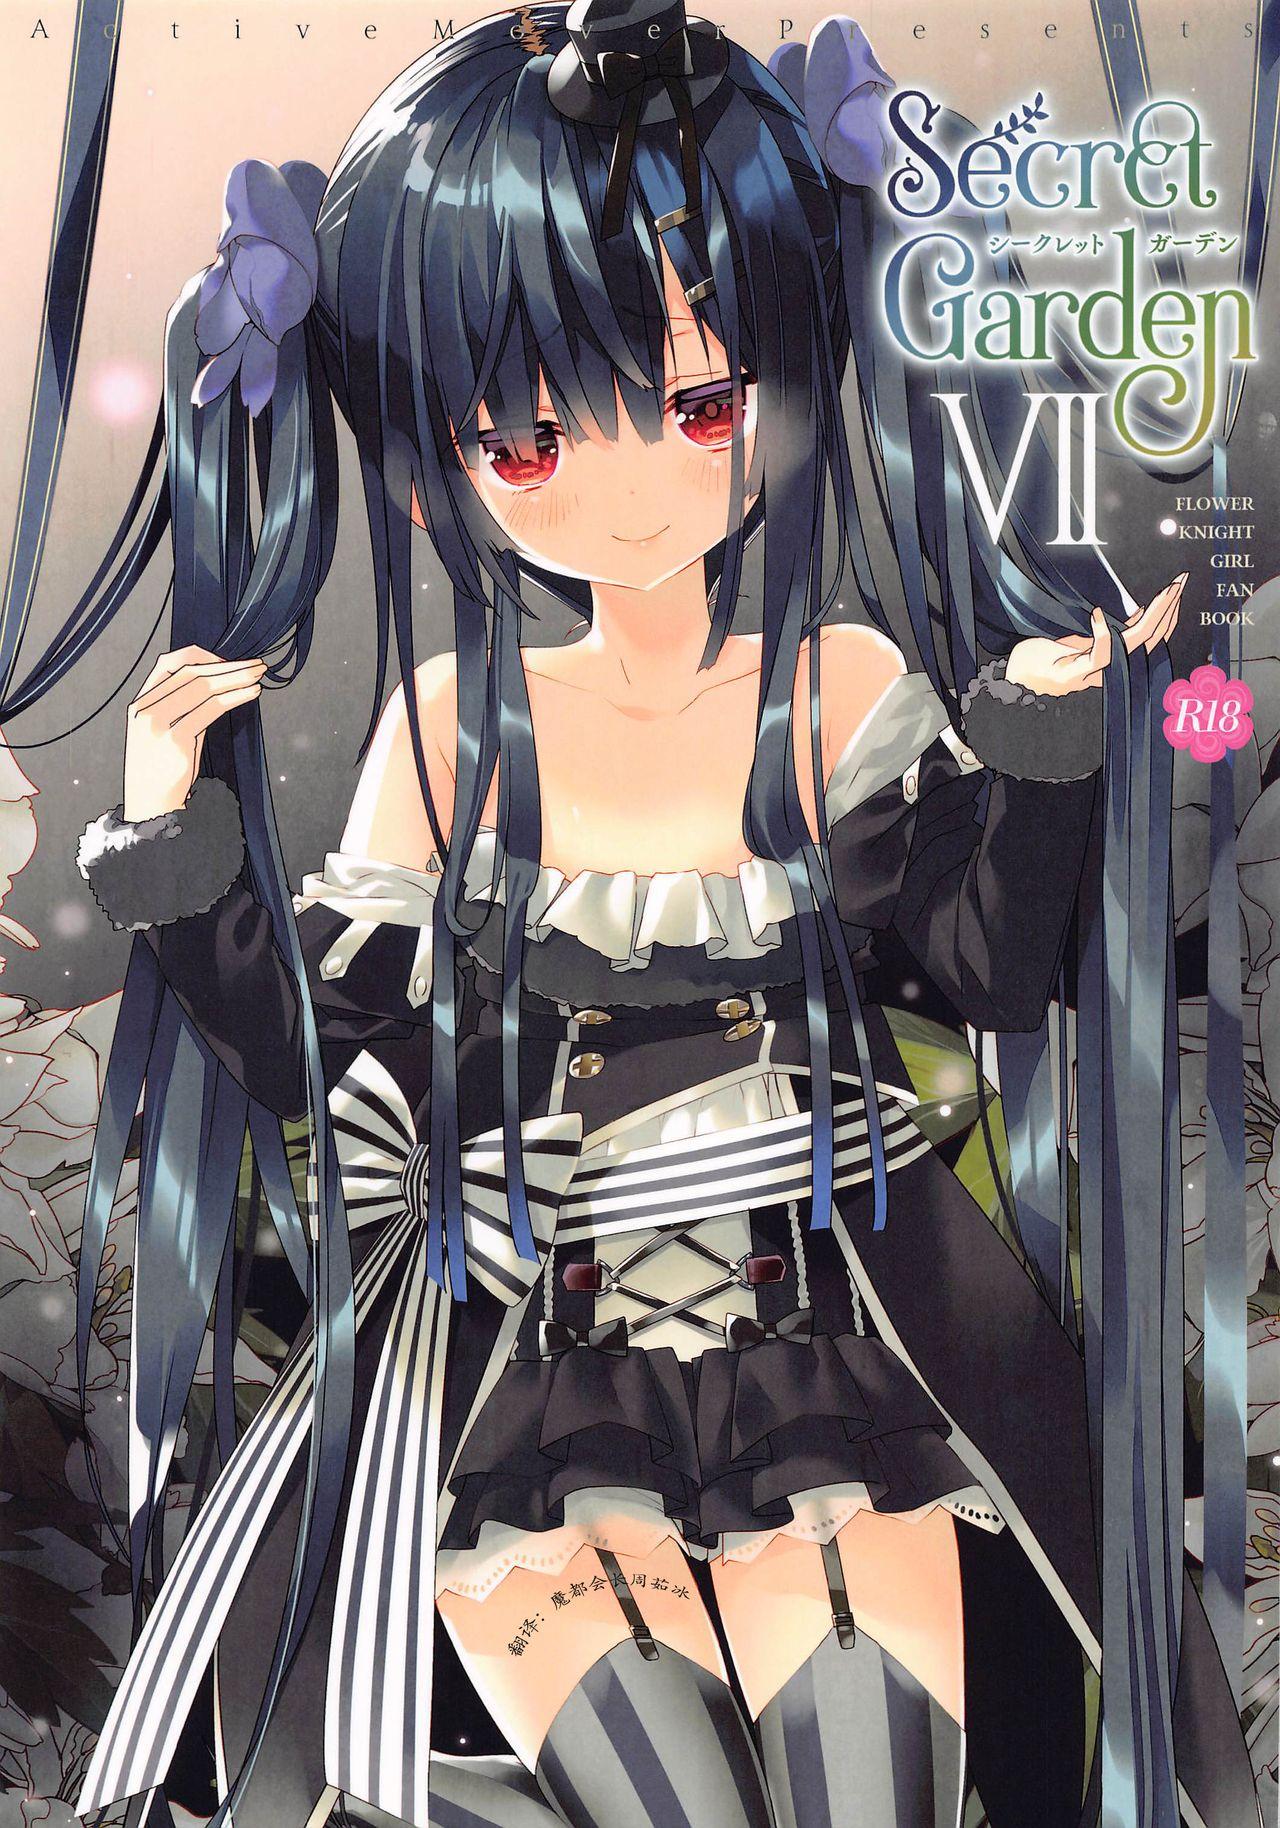 Deep Throat Secret Garden VII - Flower knight girl Goth - Picture 1